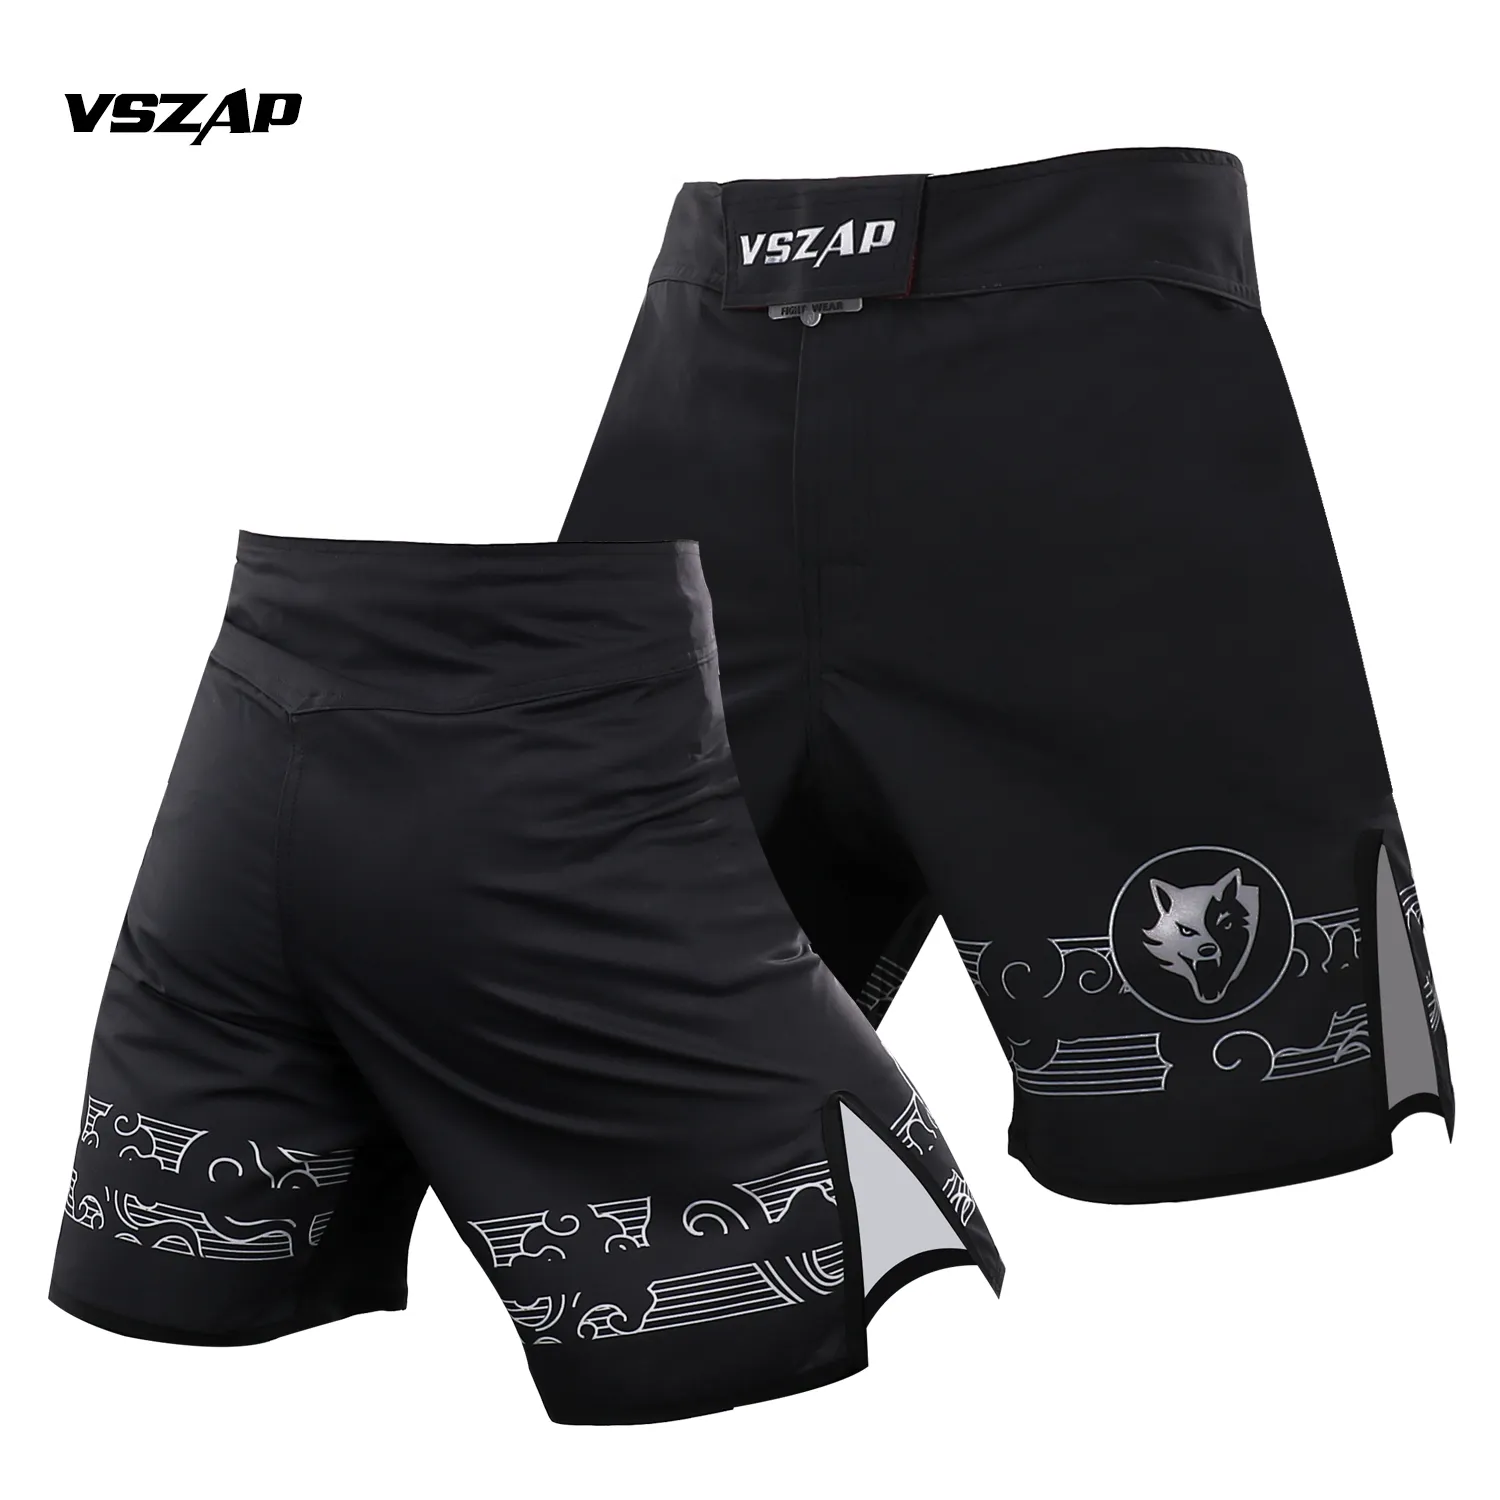 VSZAP Comprehensive Fighting Dragon Pattern Road Graphic MMA Training Boxing Muay Thai Shorts Fitness Sportas sanda och kvinnor